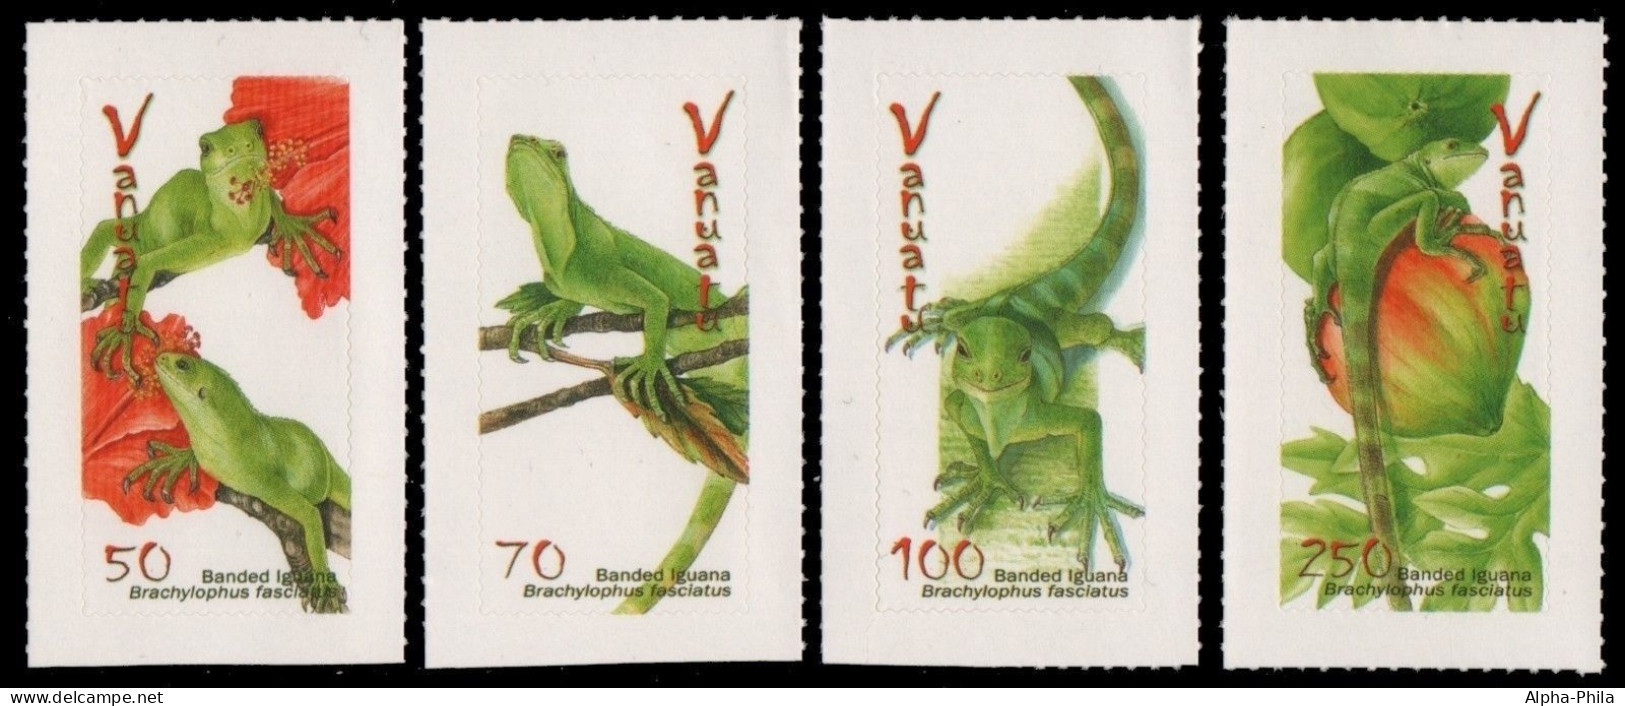 Vanuatu 2007 - Mi-Nr. 1336-1339 ** - MNH - Reptilien / Reptiles - Vanuatu (1980-...)